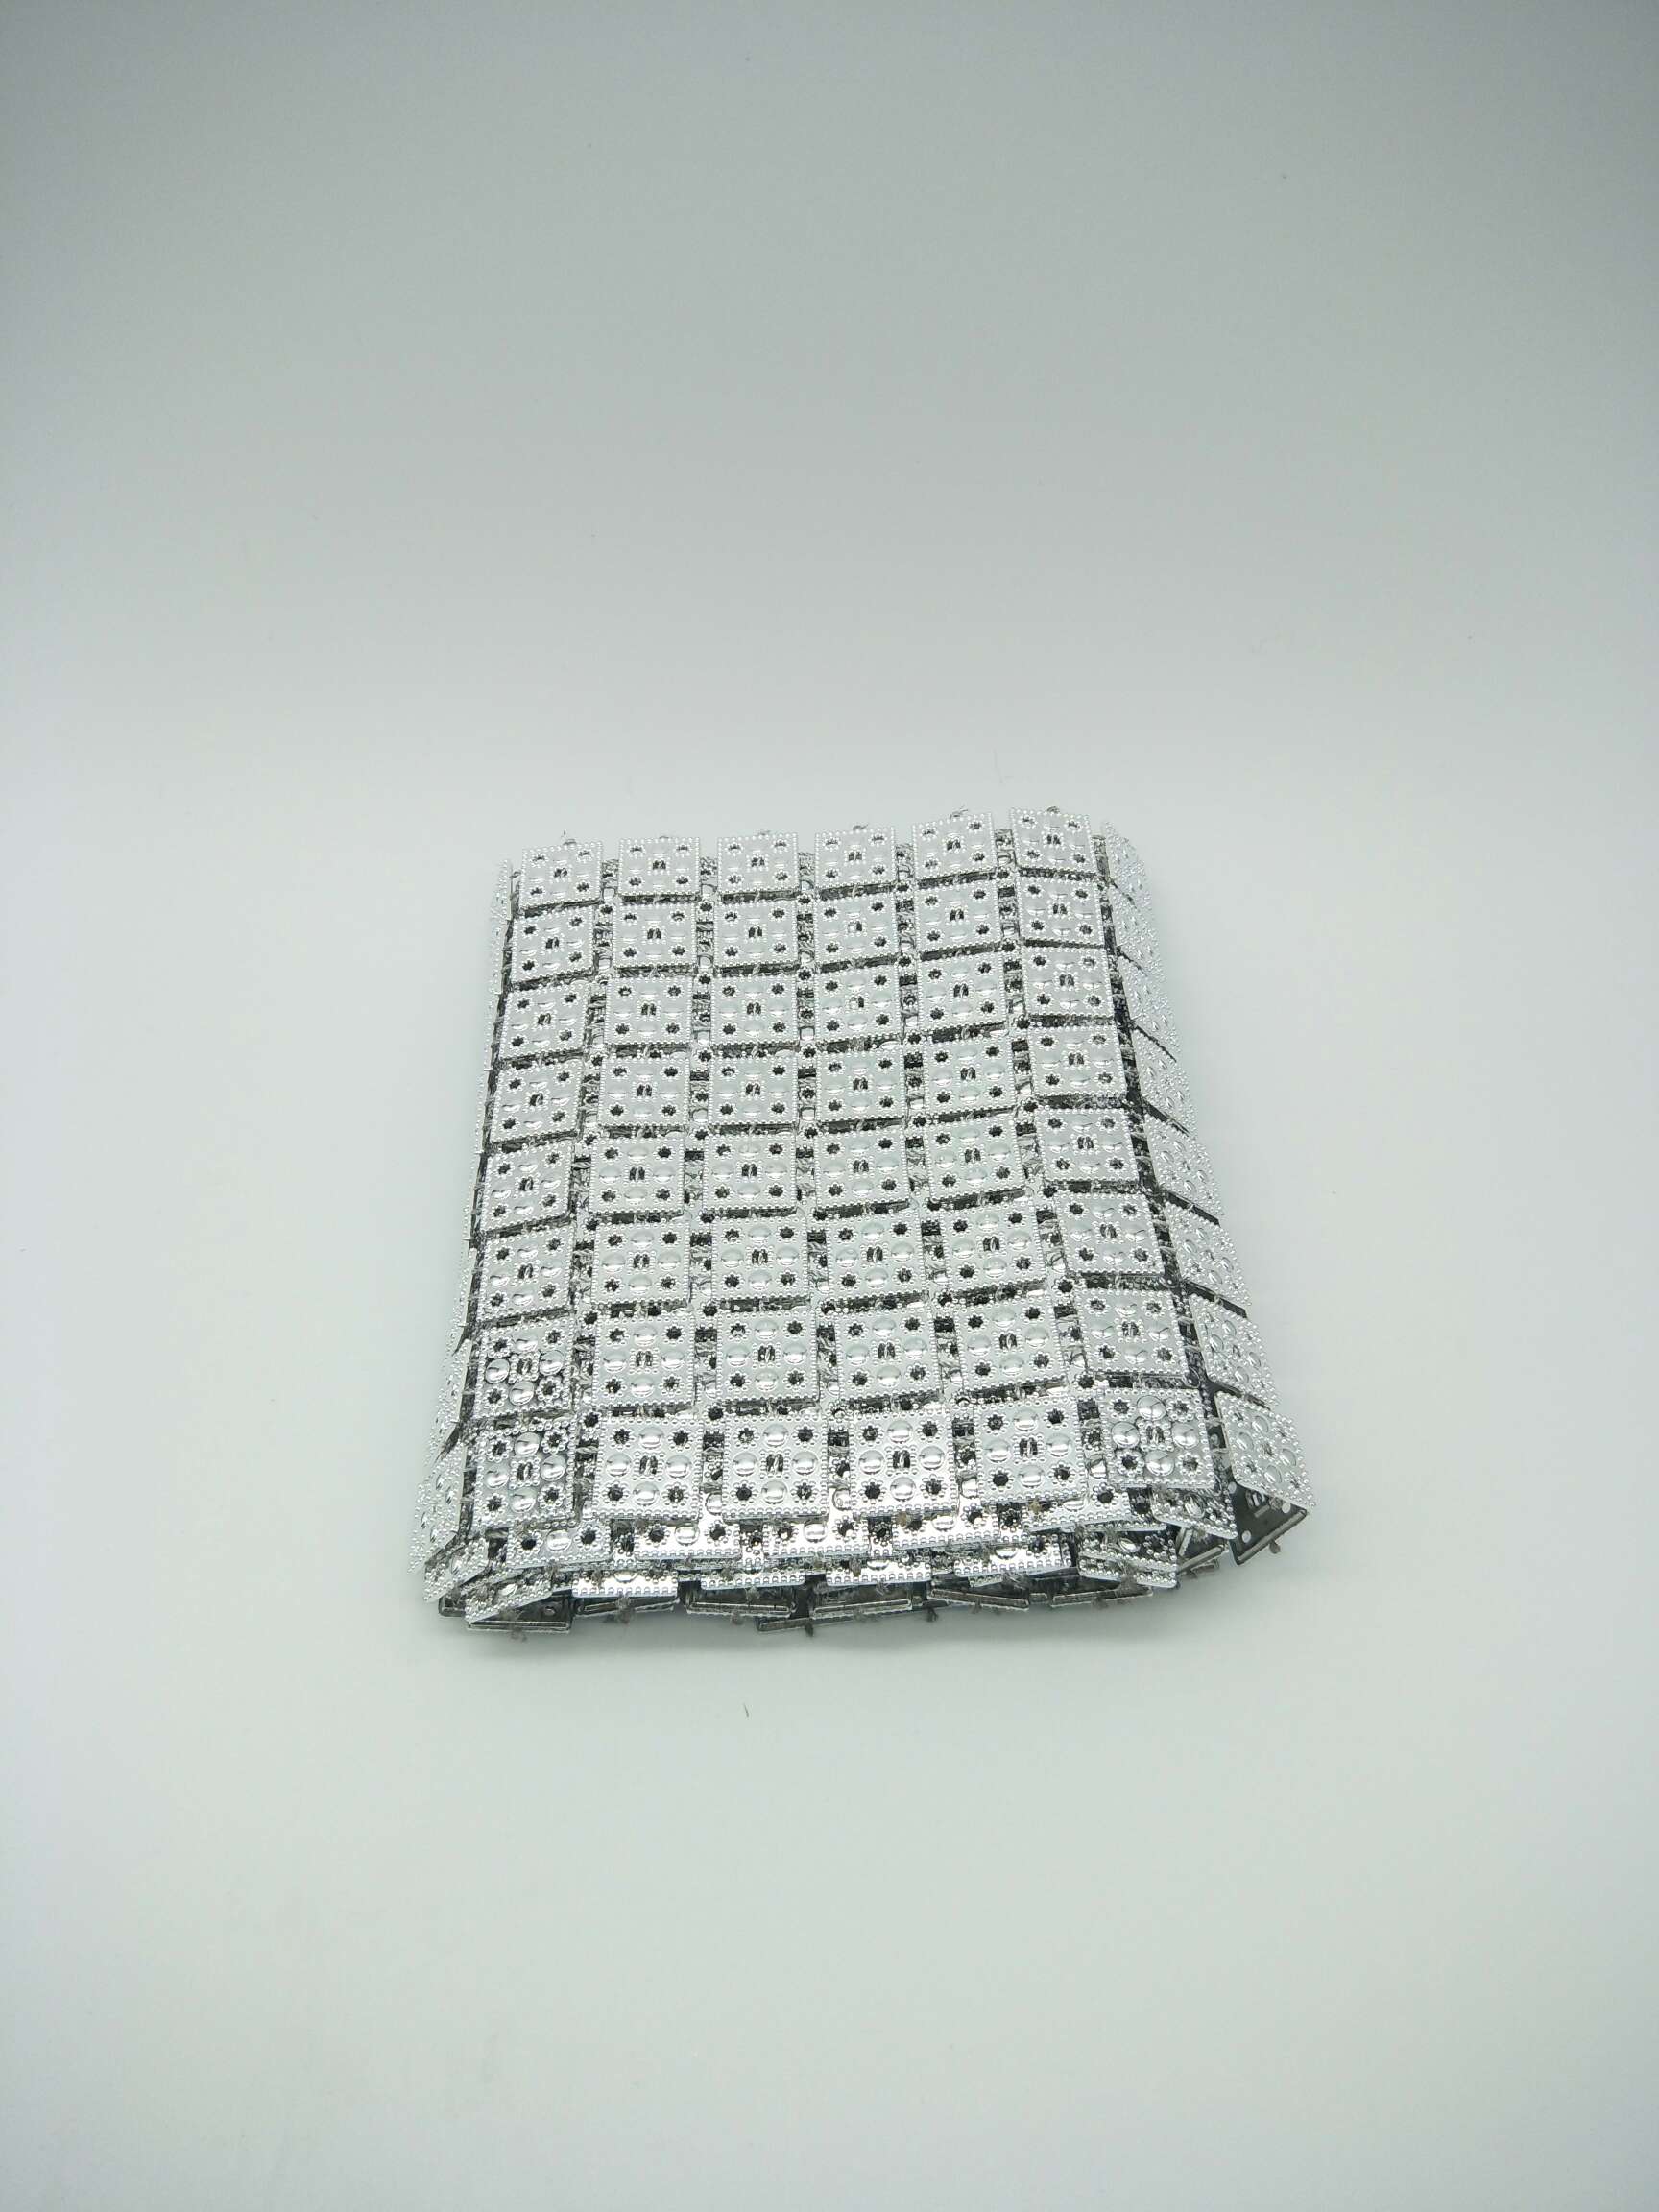 8排方块×1m排钻入opp袋包装
银色图